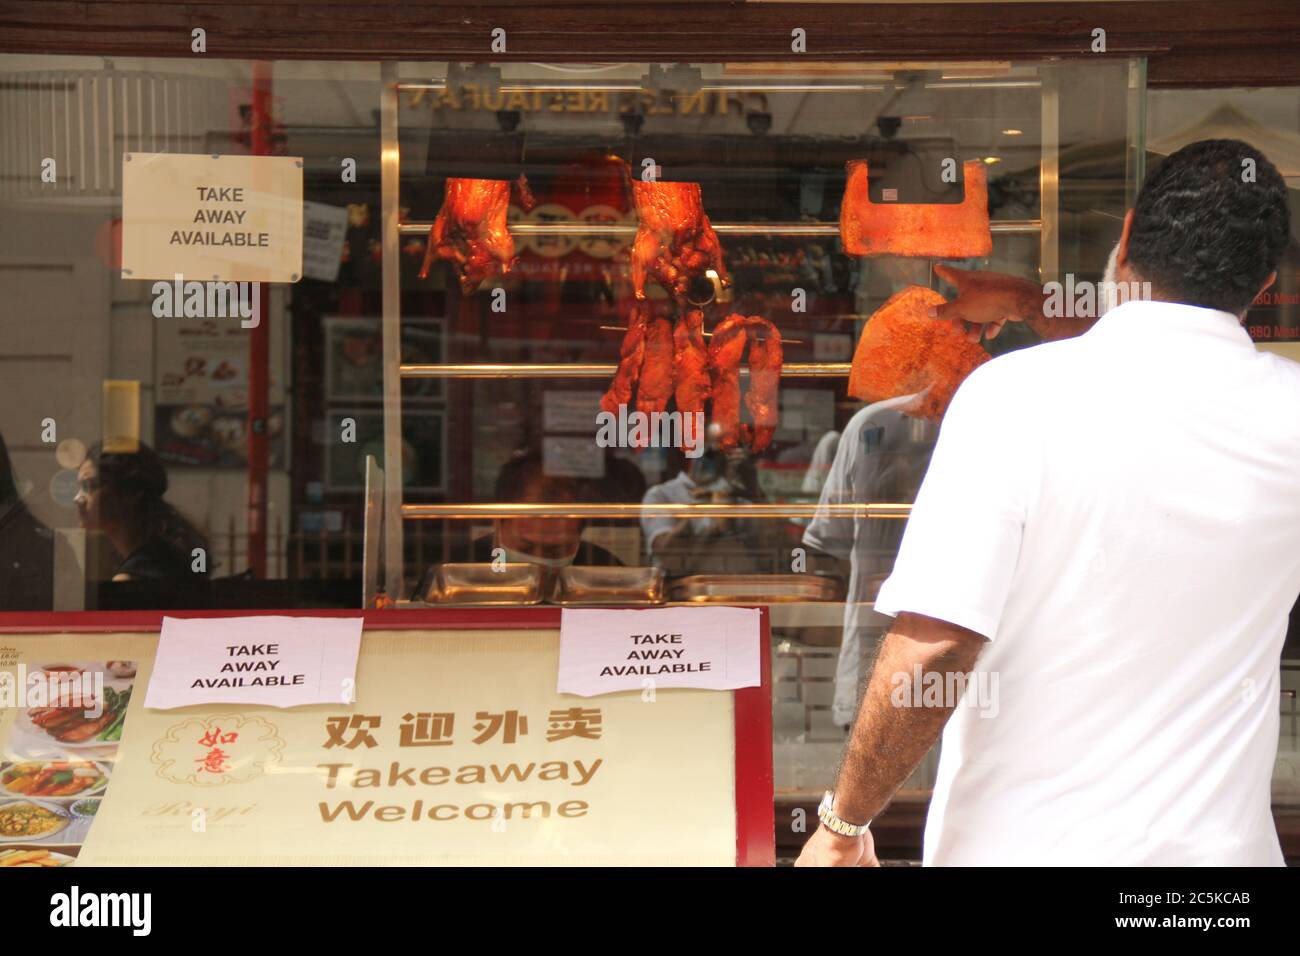 Les gens ont vu dans un restaurant chinois offrant un menu à emporter dans la ville de Chine au milieu de la crise du coronavirus.la vie quotidienne à Londres un vendredi avant l'ouverture des pubs le 4 juillet, selon les nouveaux conseils du gouvernement. Banque D'Images